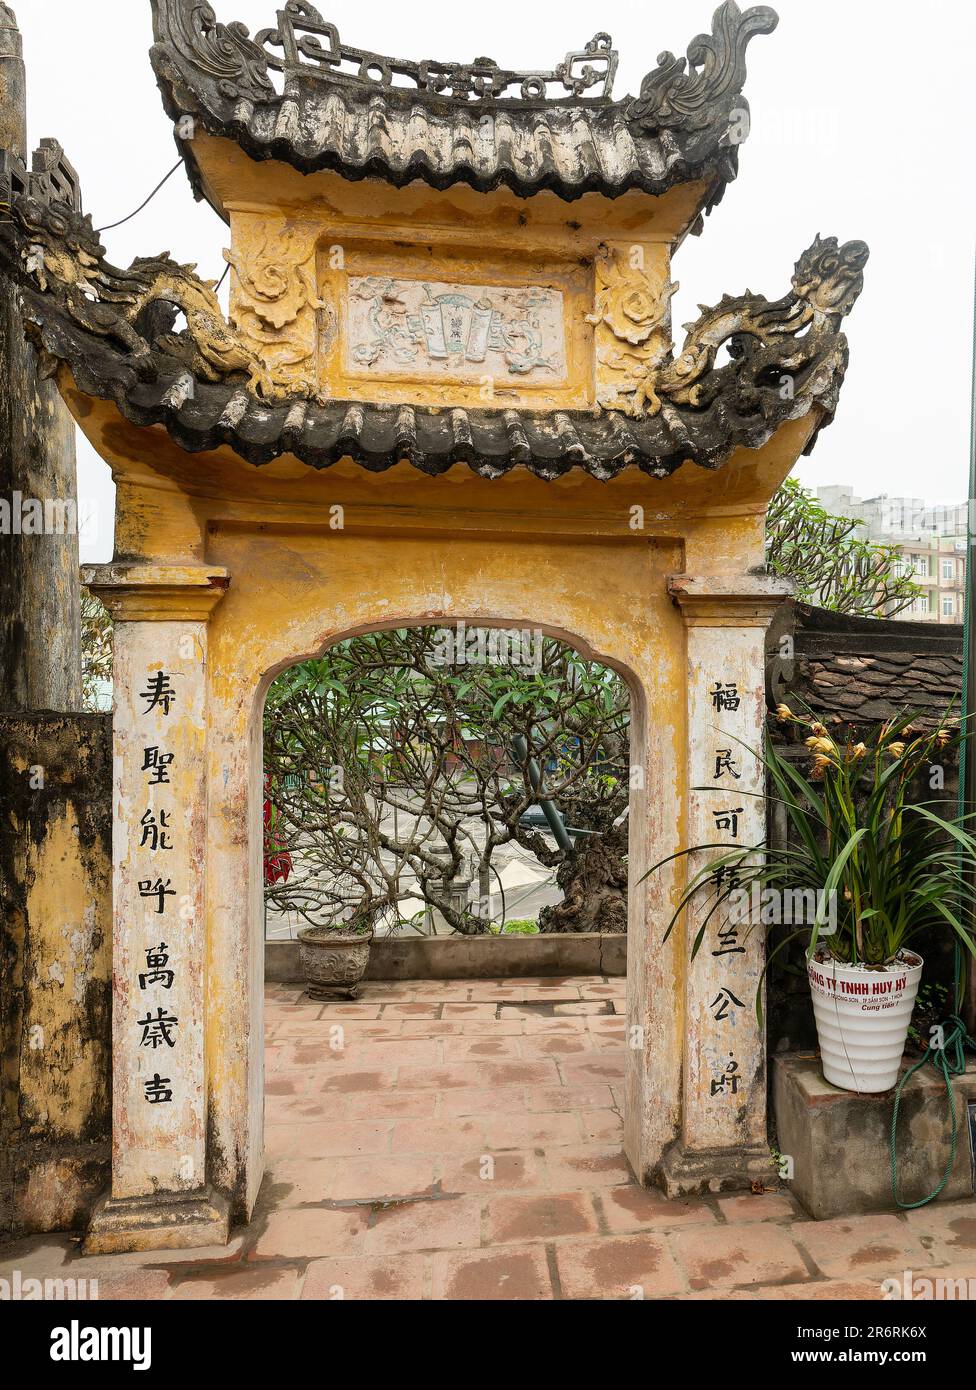 Porte de Den Doc Cuoc, Tam Toa Thanh Mau, un petit temple pour Thanh, Thanh Giong à l'extrémité sud de Sam son Beach dans la province de Thanh Hoa au Viet Nam Banque D'Images